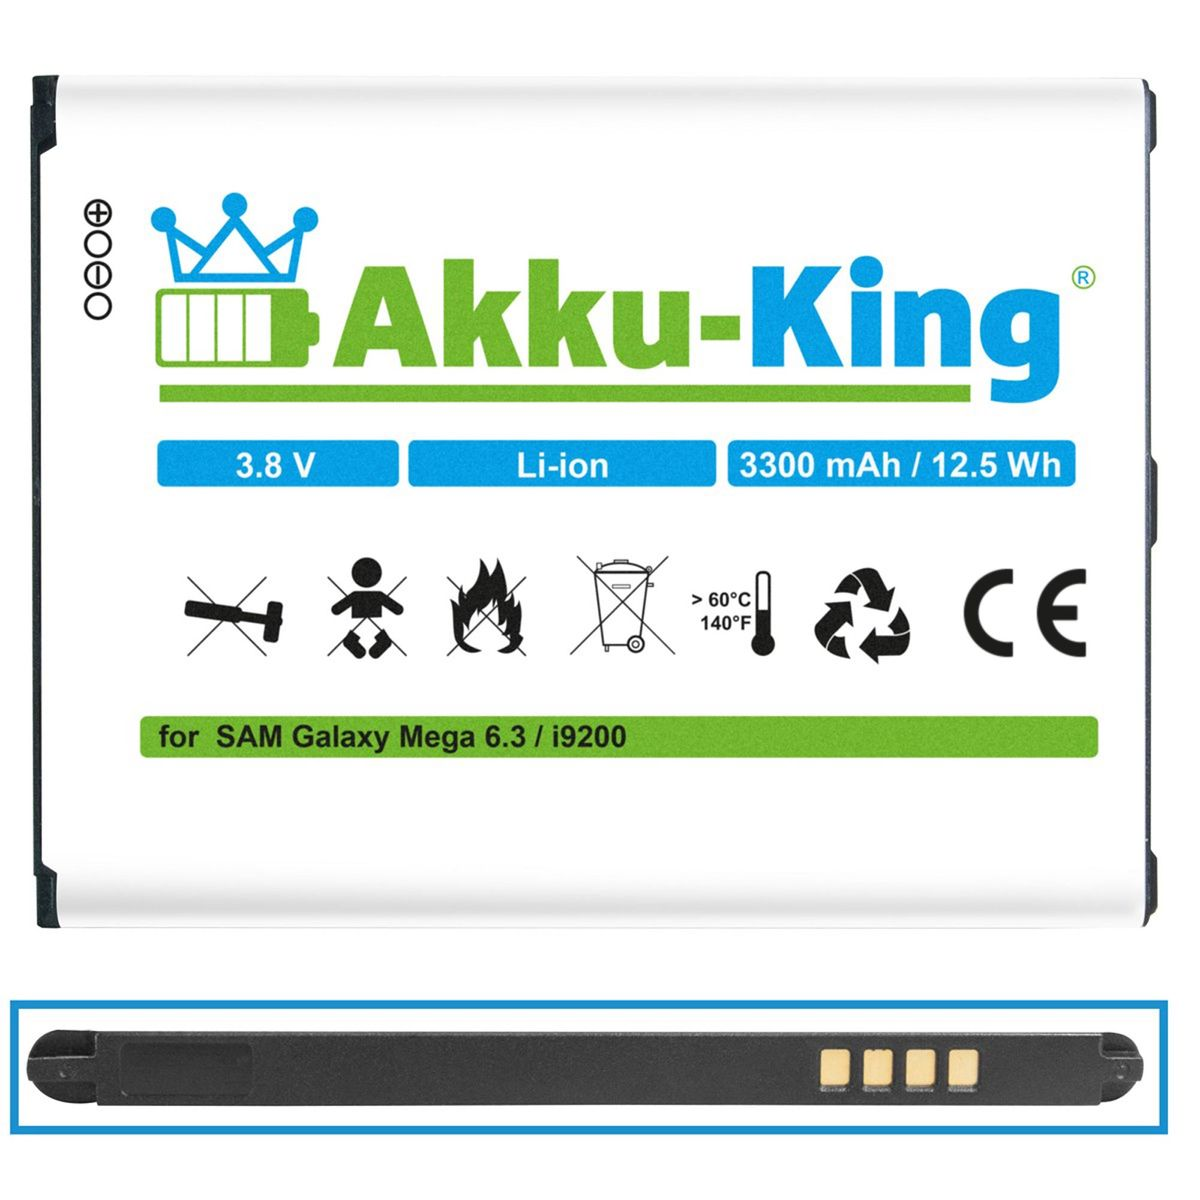 kompatibel mit Samsung AKKU-KING Volt, EB-B700BE 3300mAh Akku 3.8 Li-Ion Handy-Akku,